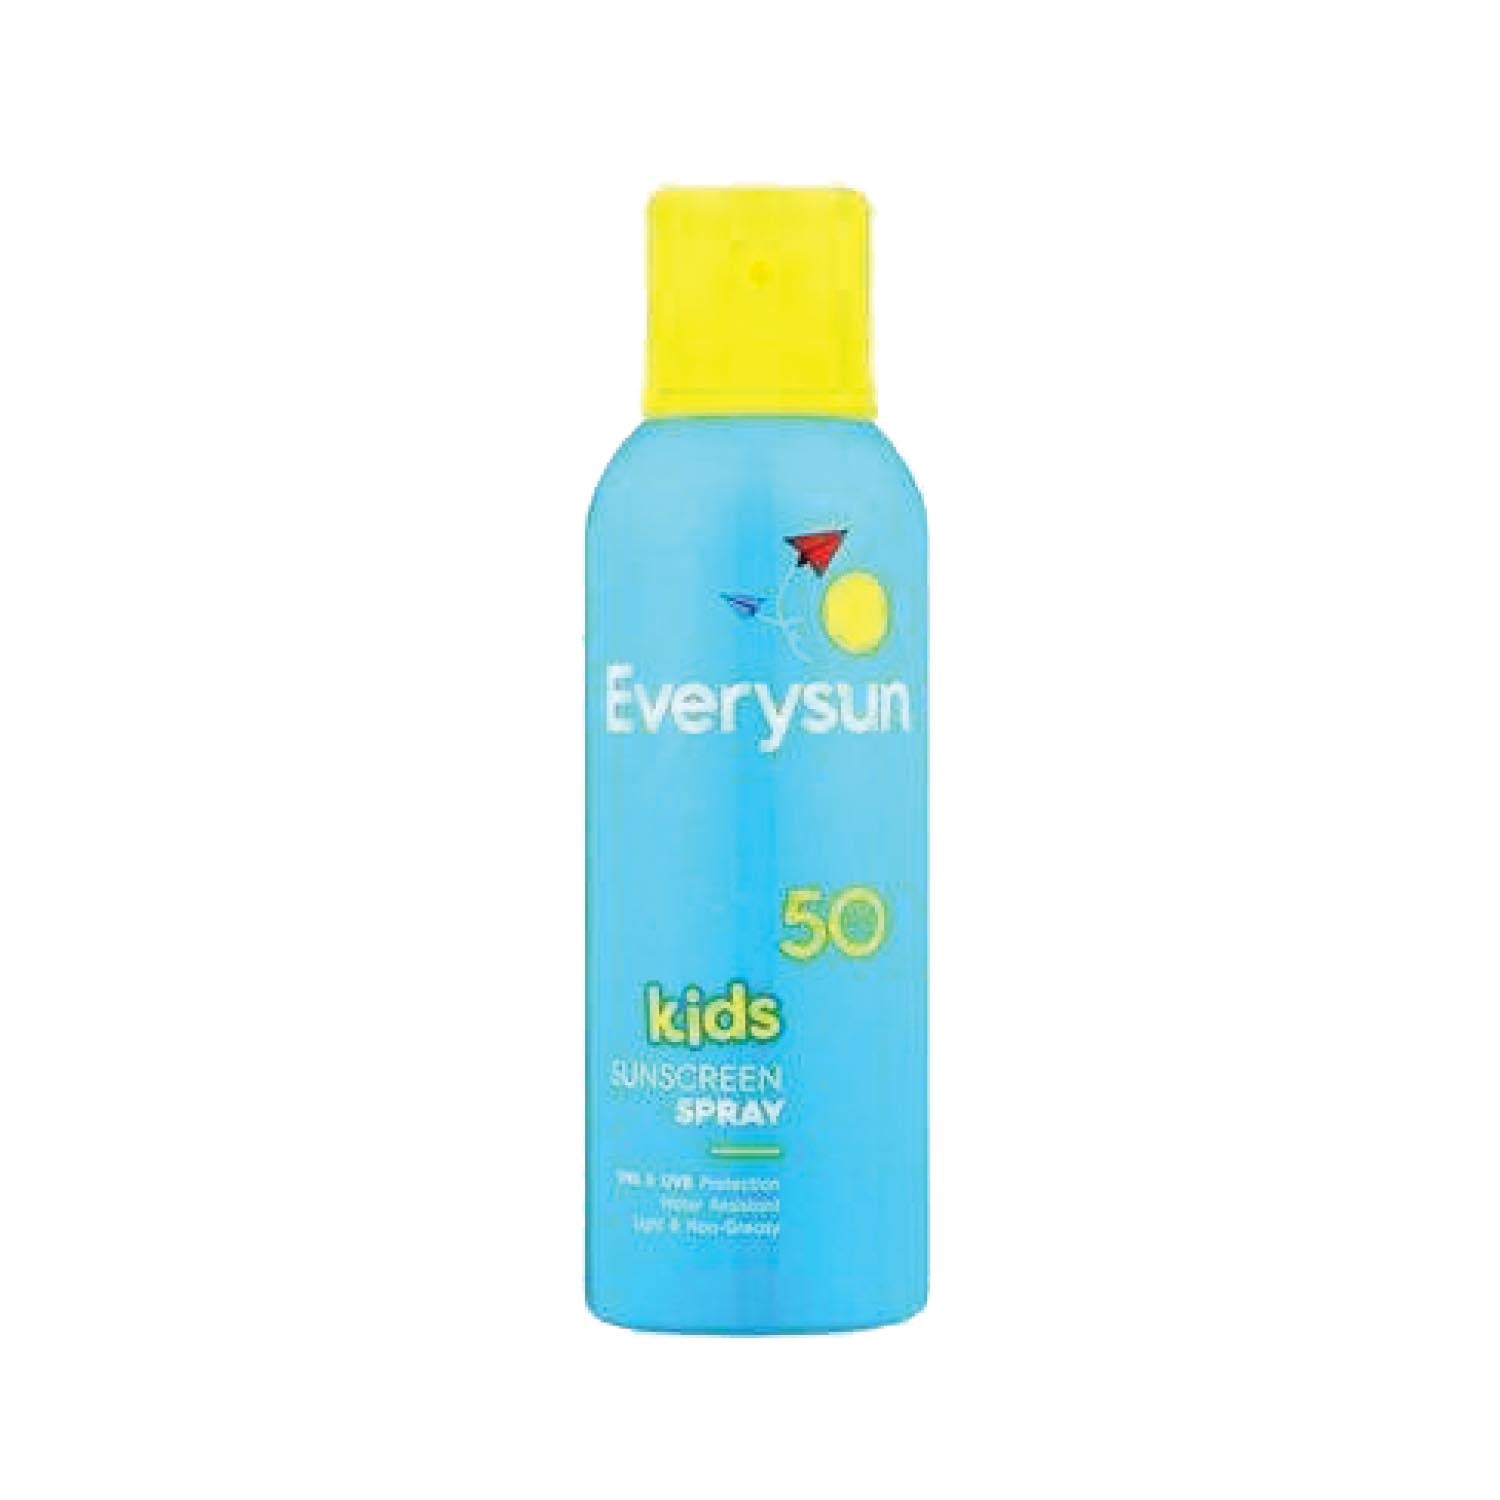 Everysun Kids Aero Spray SPF50, 200ml